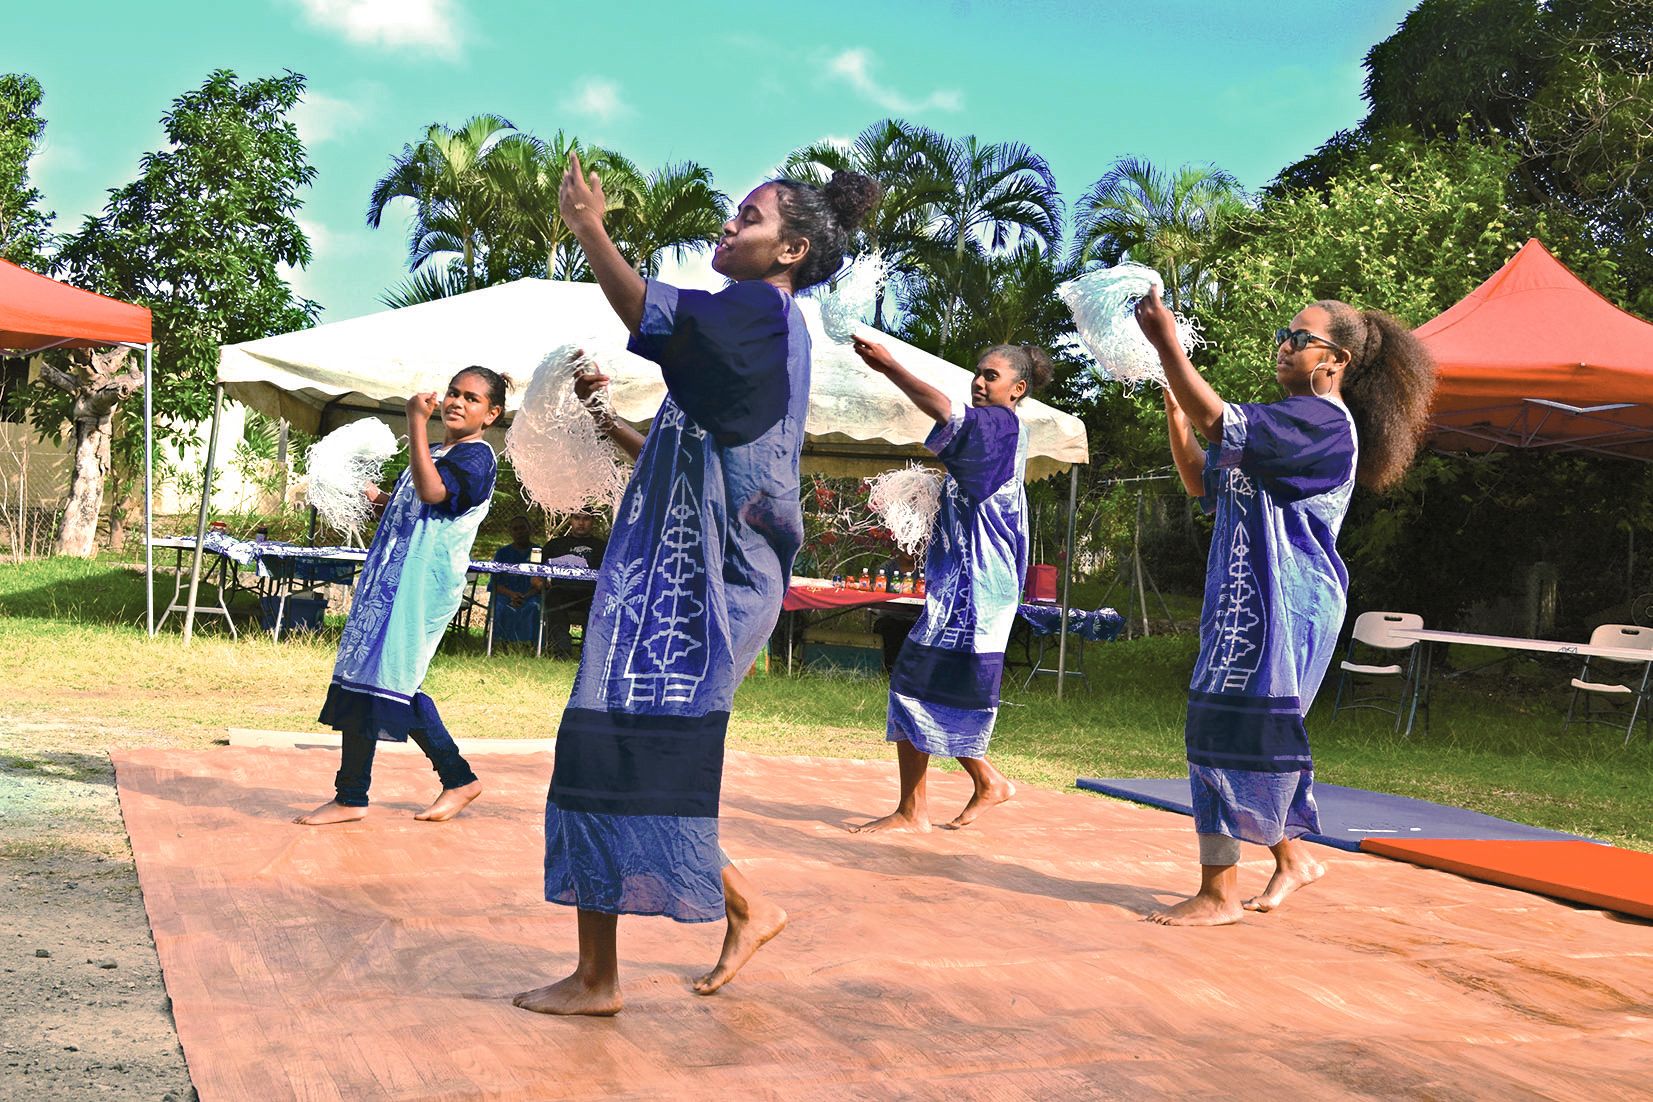 Une dizaine de groupes se sont succédé. Parmi eux, la formation Wathunara (notre photo) a ouvert les festivités avec ses danses traditionnelles de Tiga. La prochaine Journée des communautés est prévue le 29 septembre et devrait tourner autour du thème « t